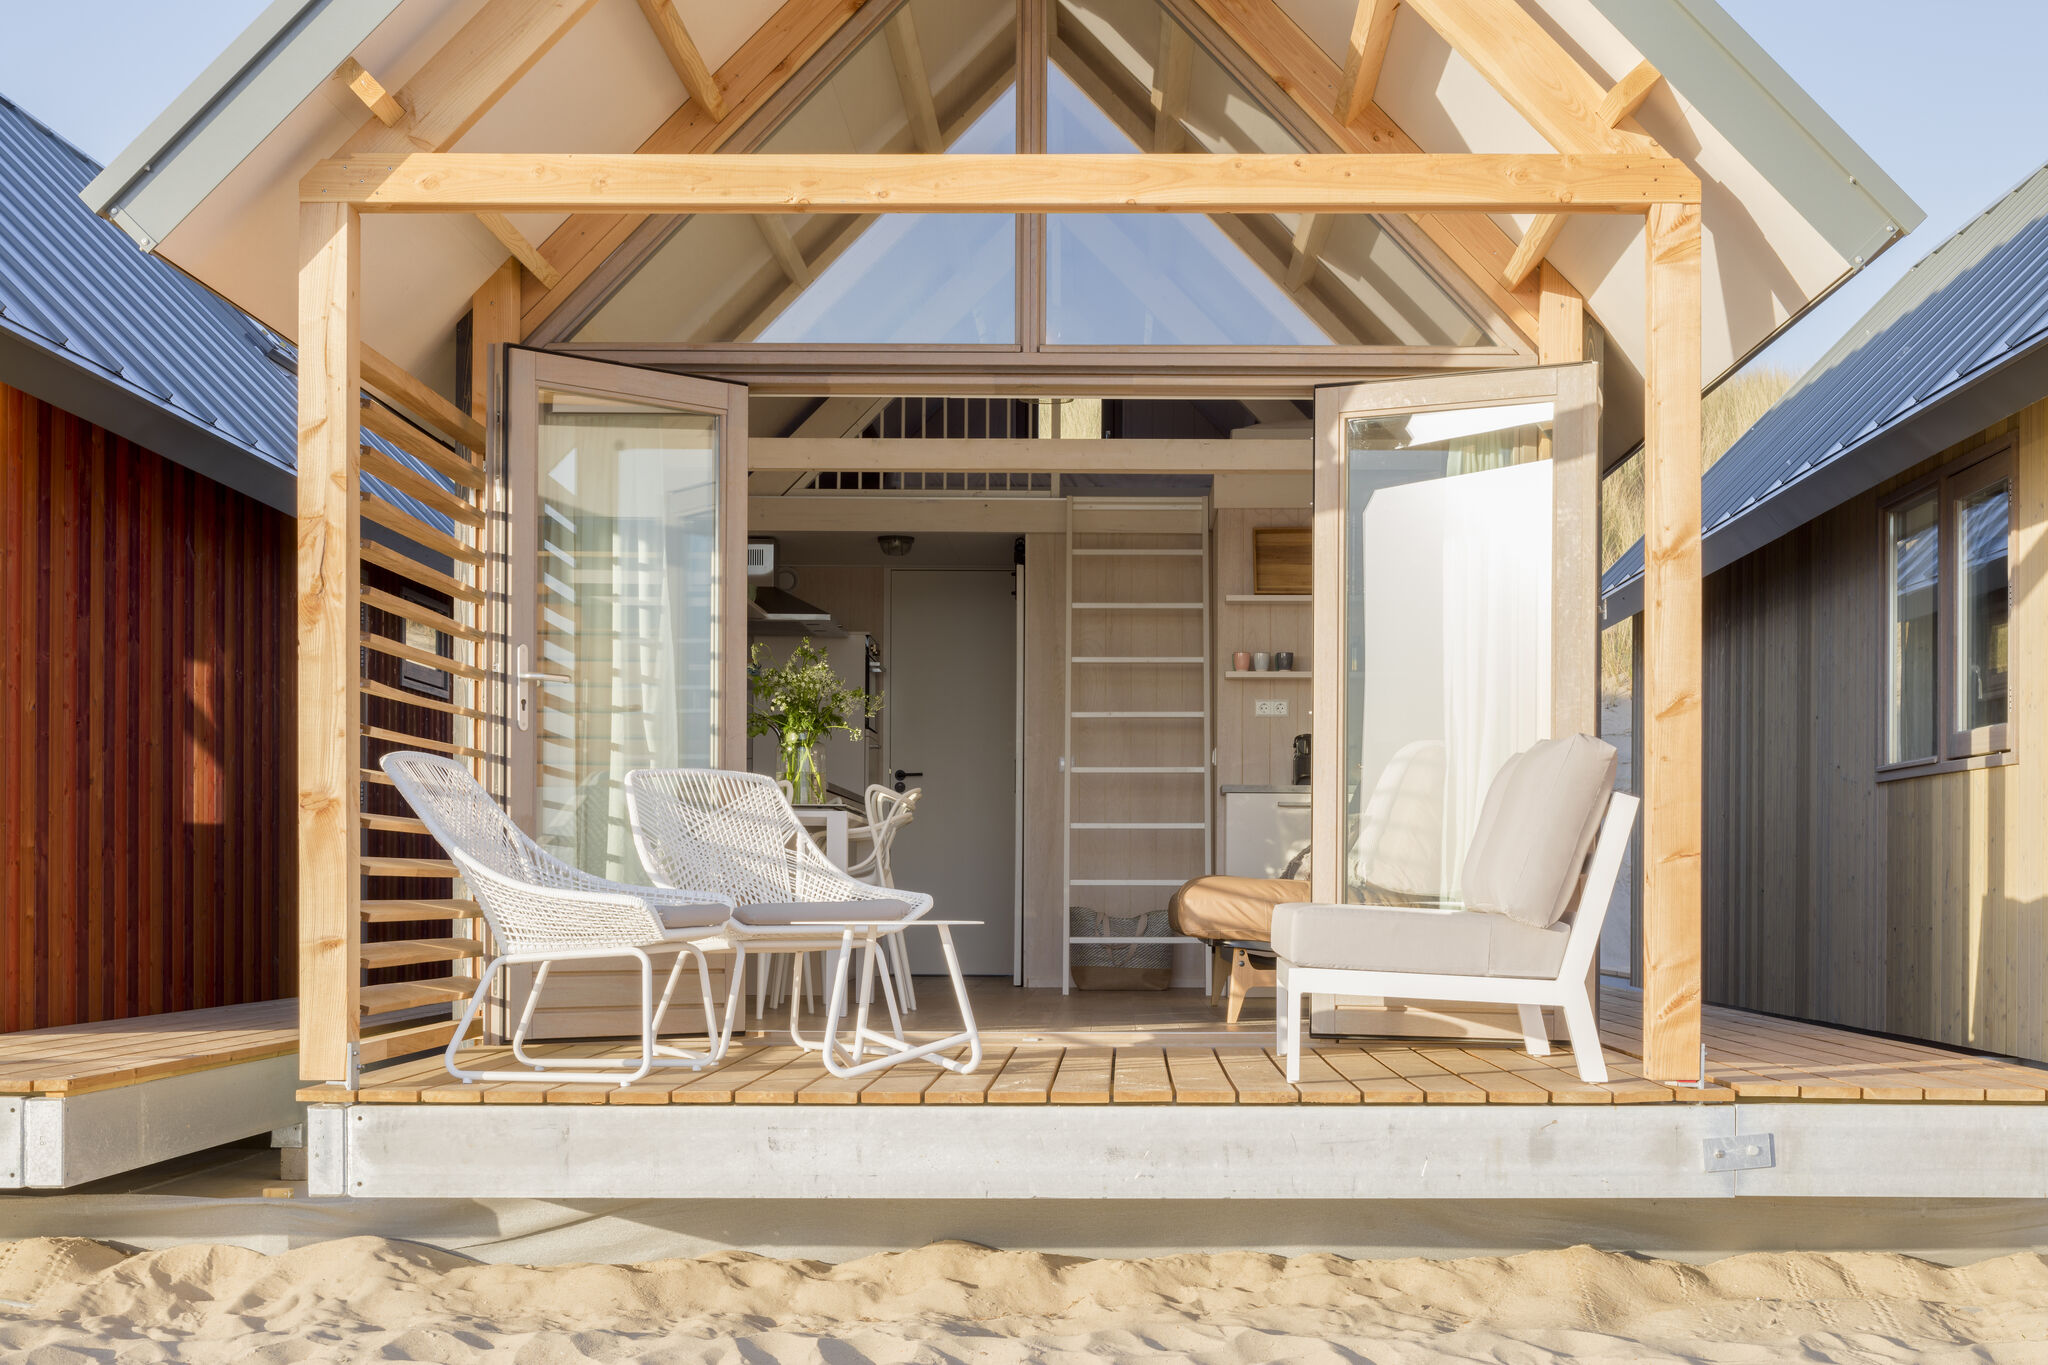 Schitterend gelegen vakantiehuis op het schone strand van Vlissingen